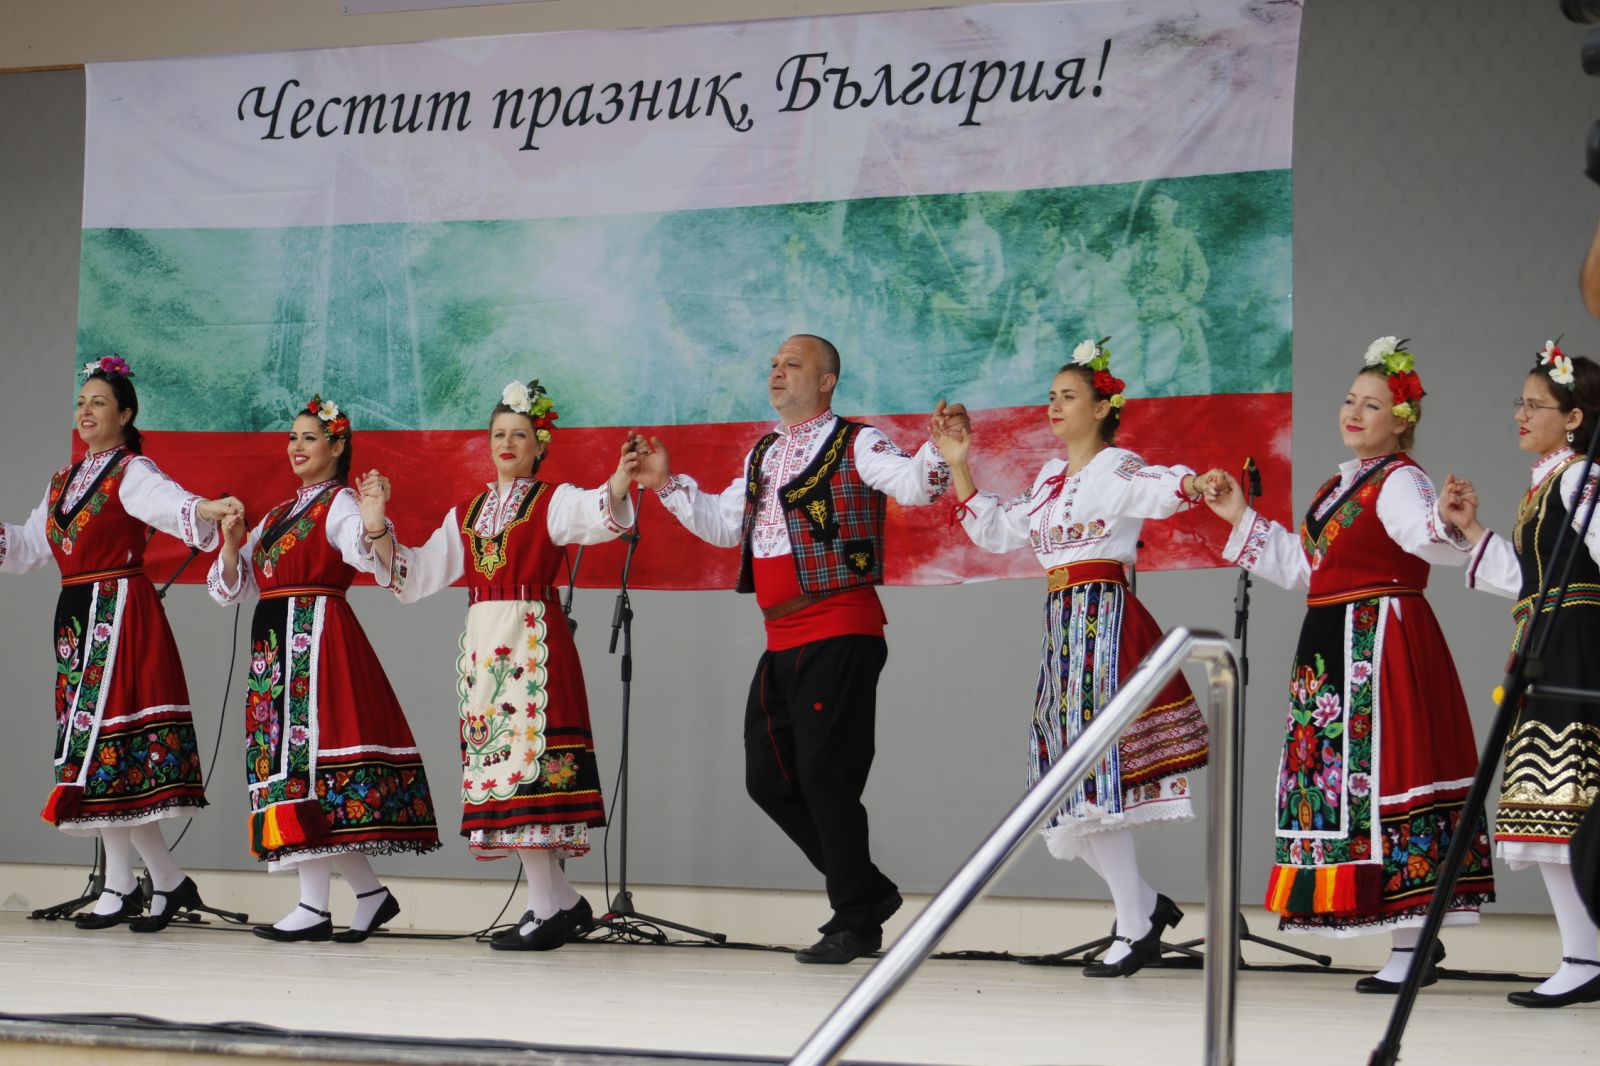 Γιόρτασαν την ημέρα της Βουλγαρικής Επανάστασης στην Ταμασό.Video.